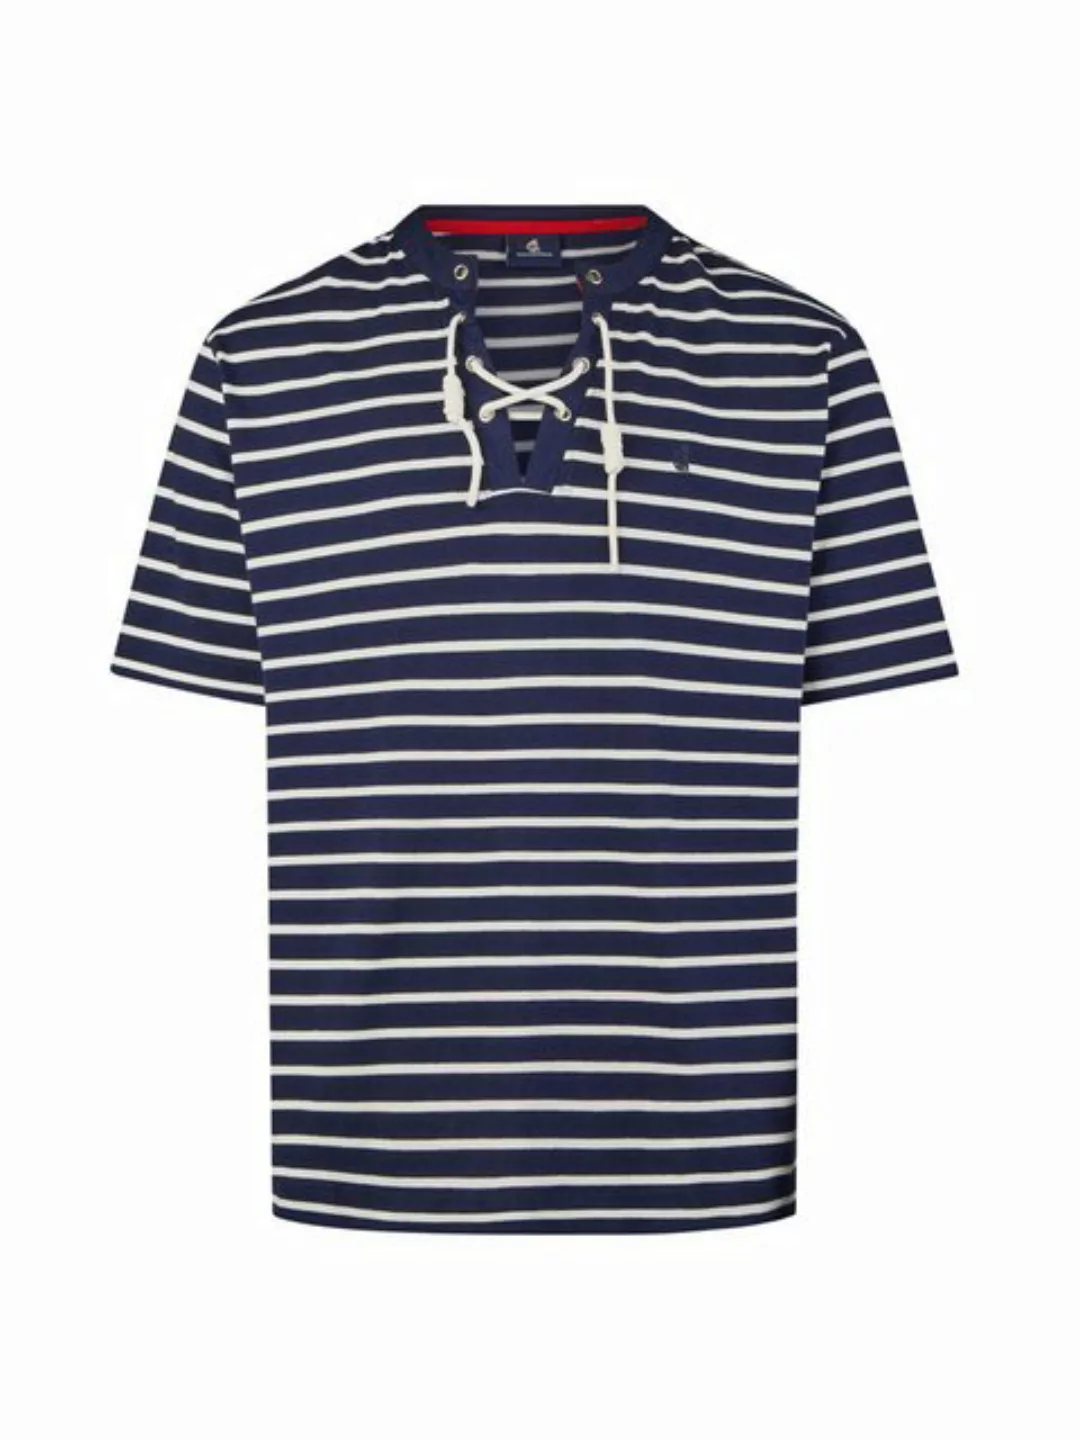 Wind sportswear T-Shirt Herren maritim, lässig, luftig günstig online kaufen